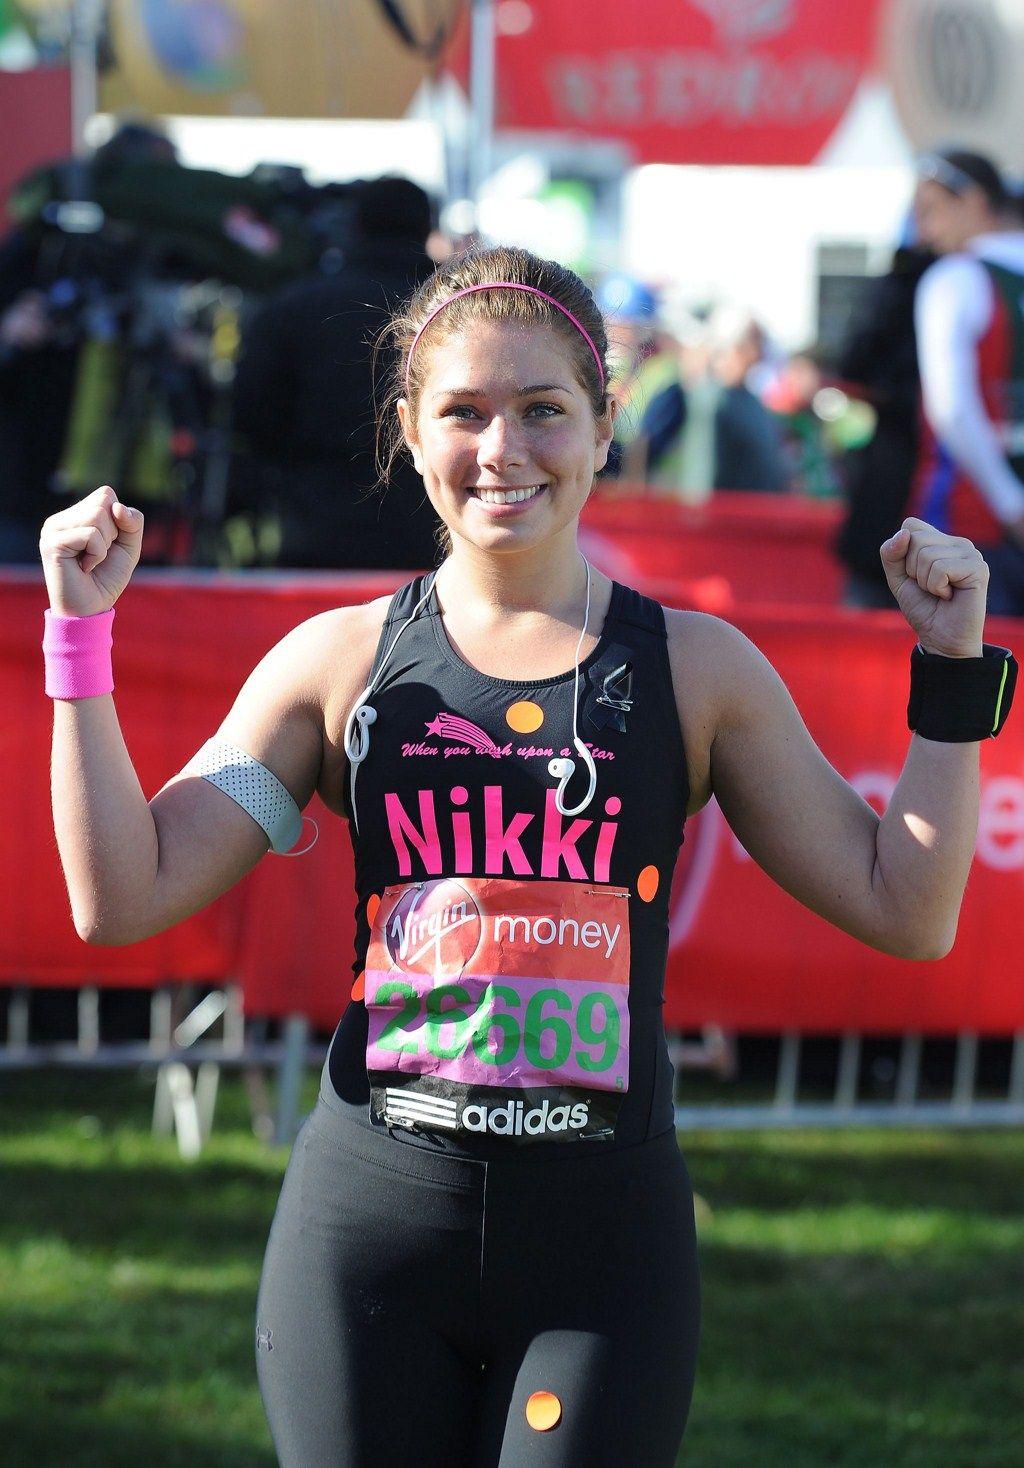 Nikki Sanderson in Spandex, running at the London Marathon